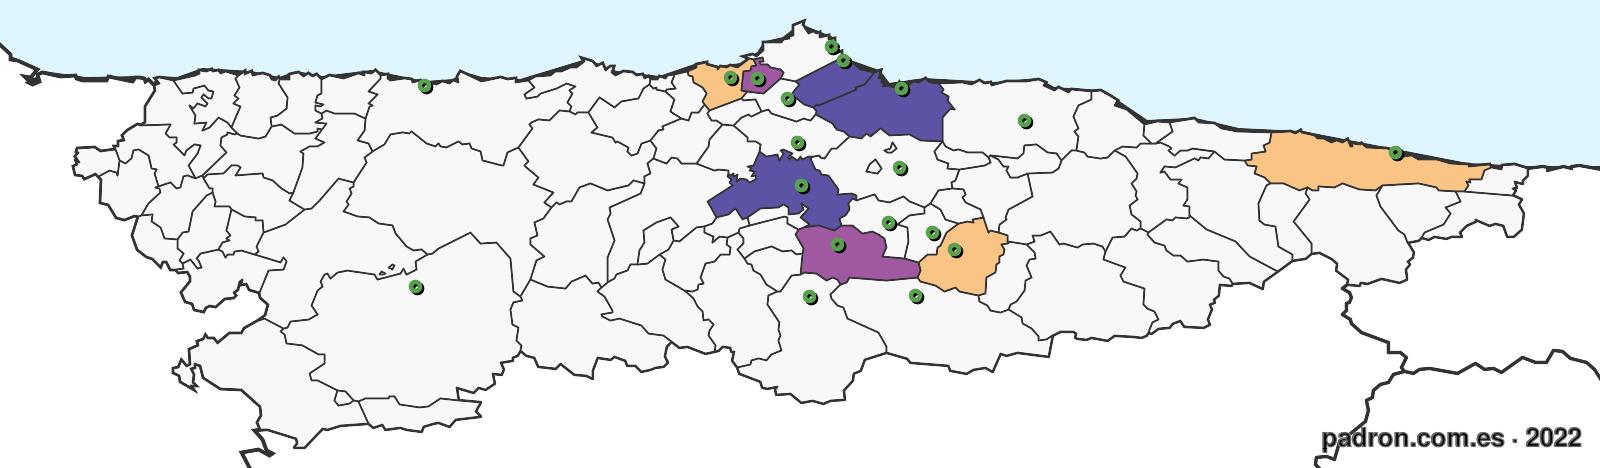 eslovacos en asturias.